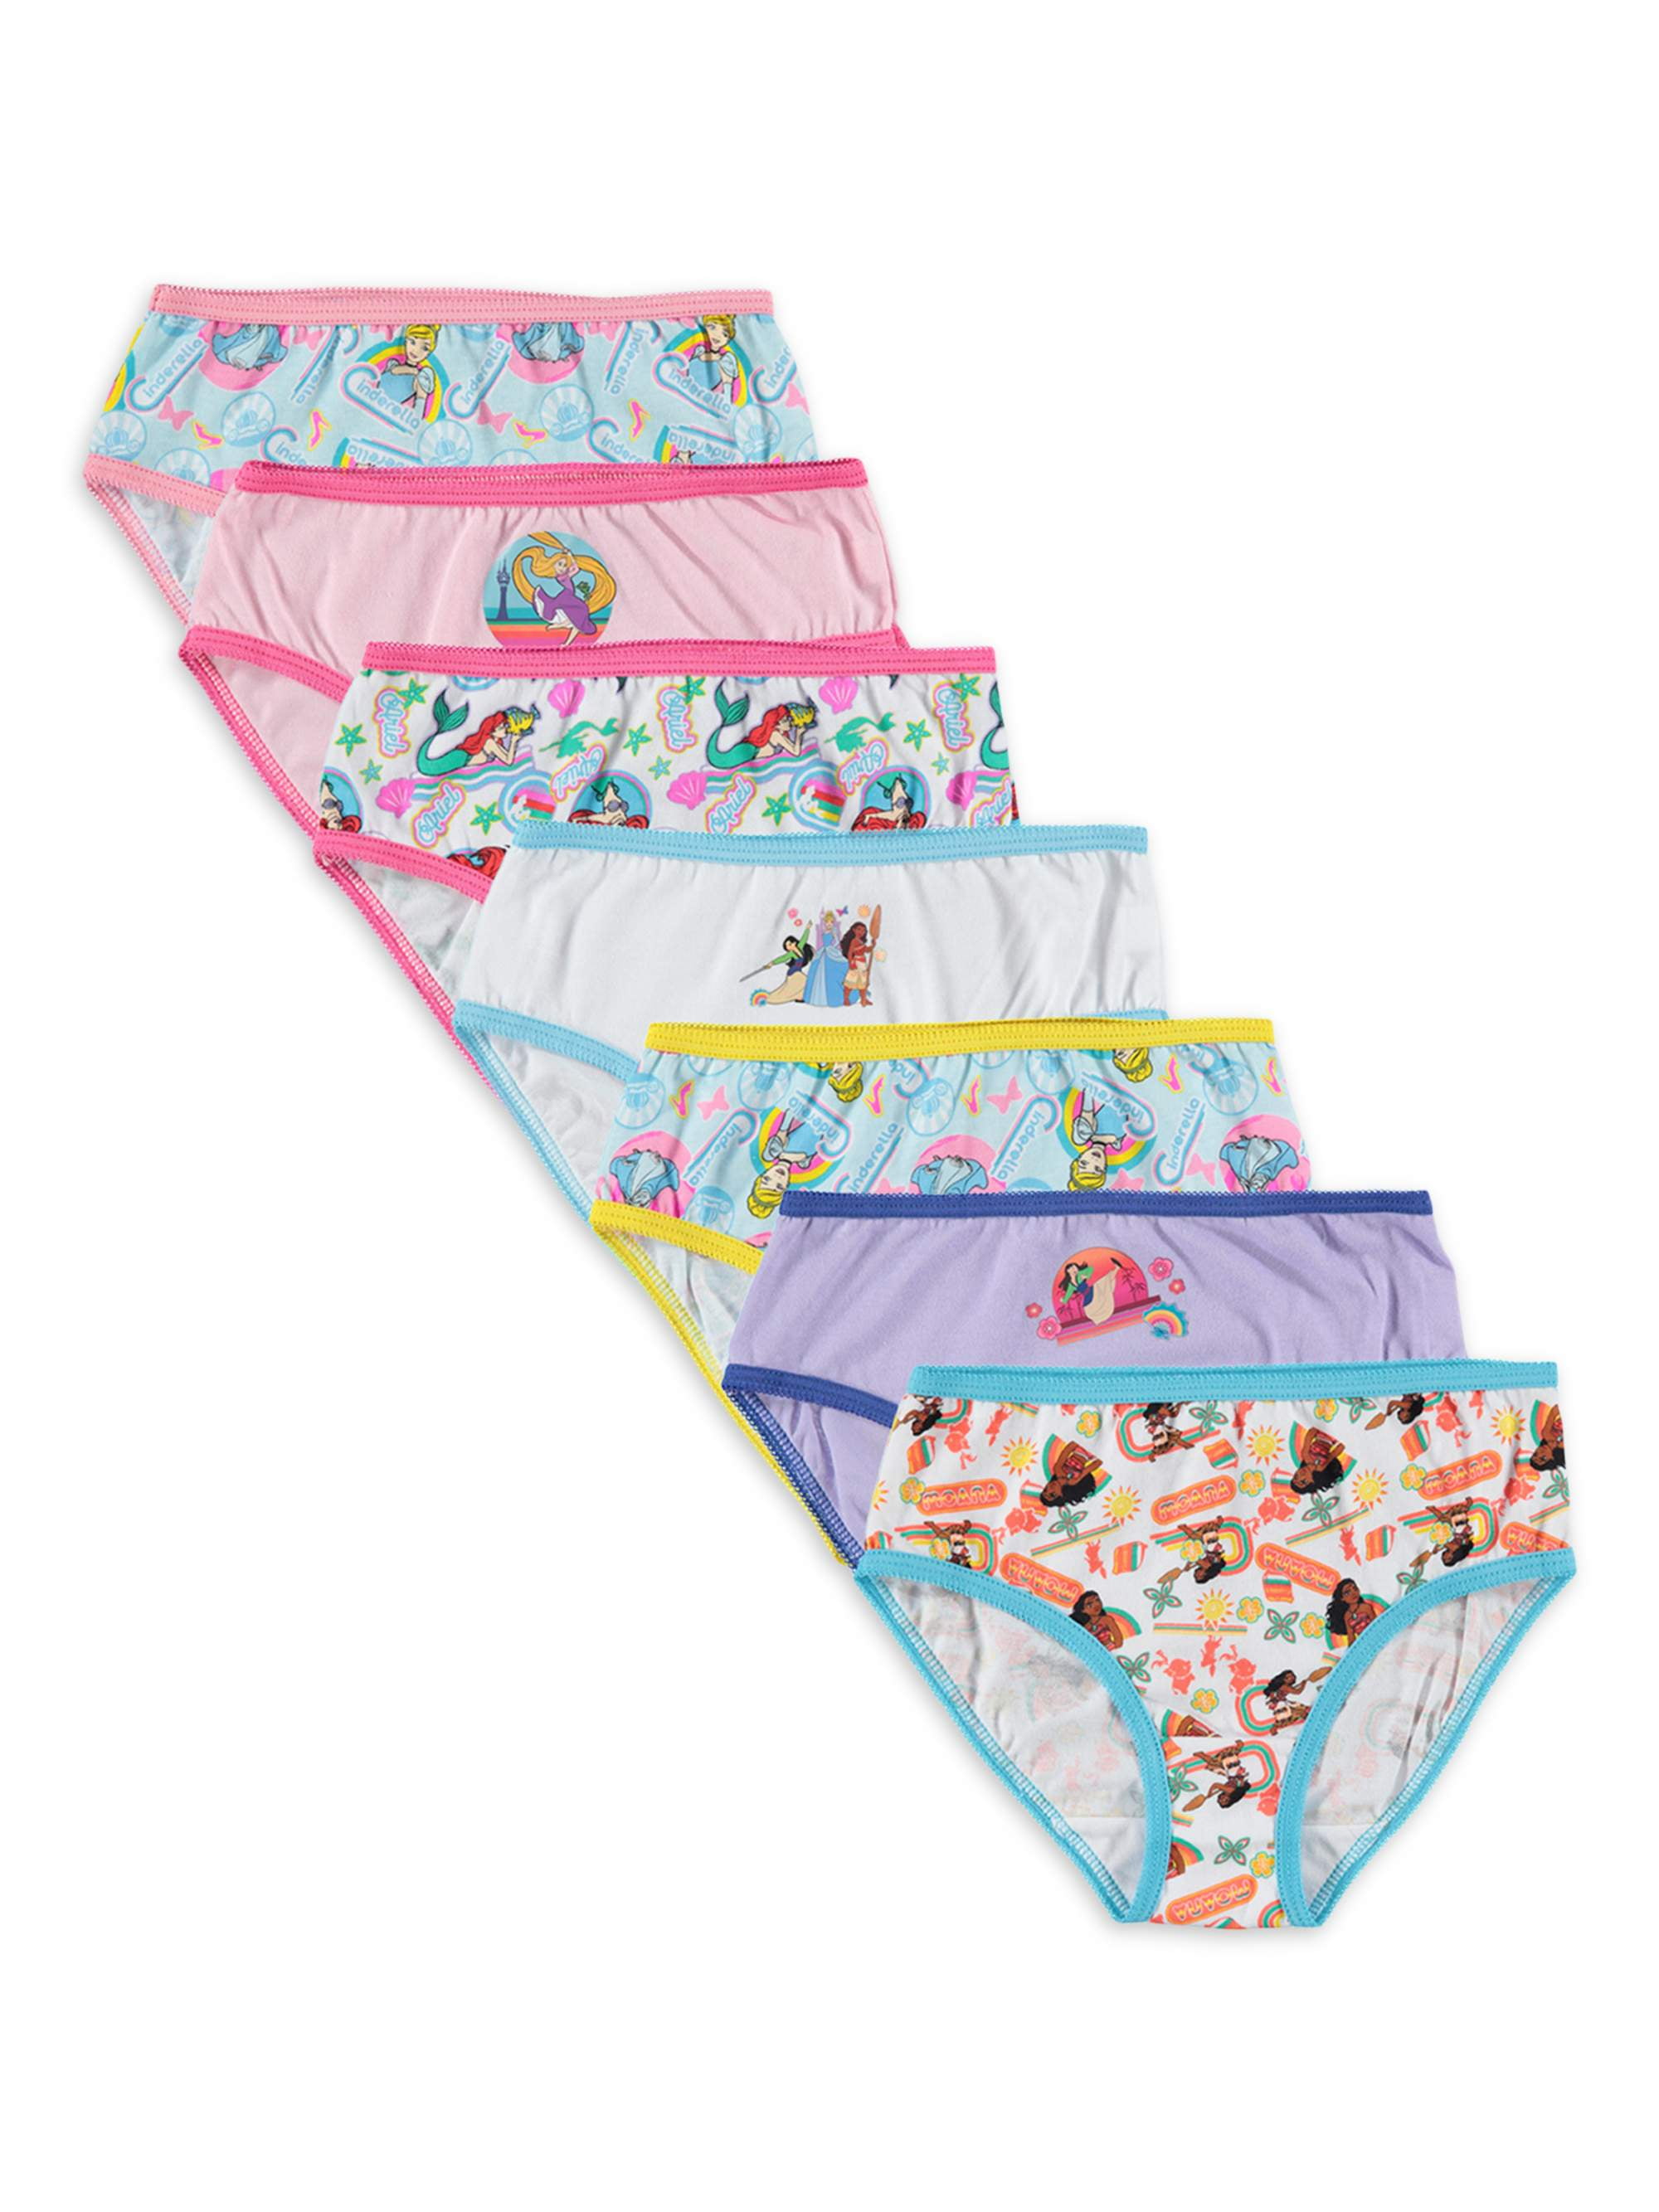 Disney Princess Girls Briefs Underwear 7-Pack, Sizes 4-8